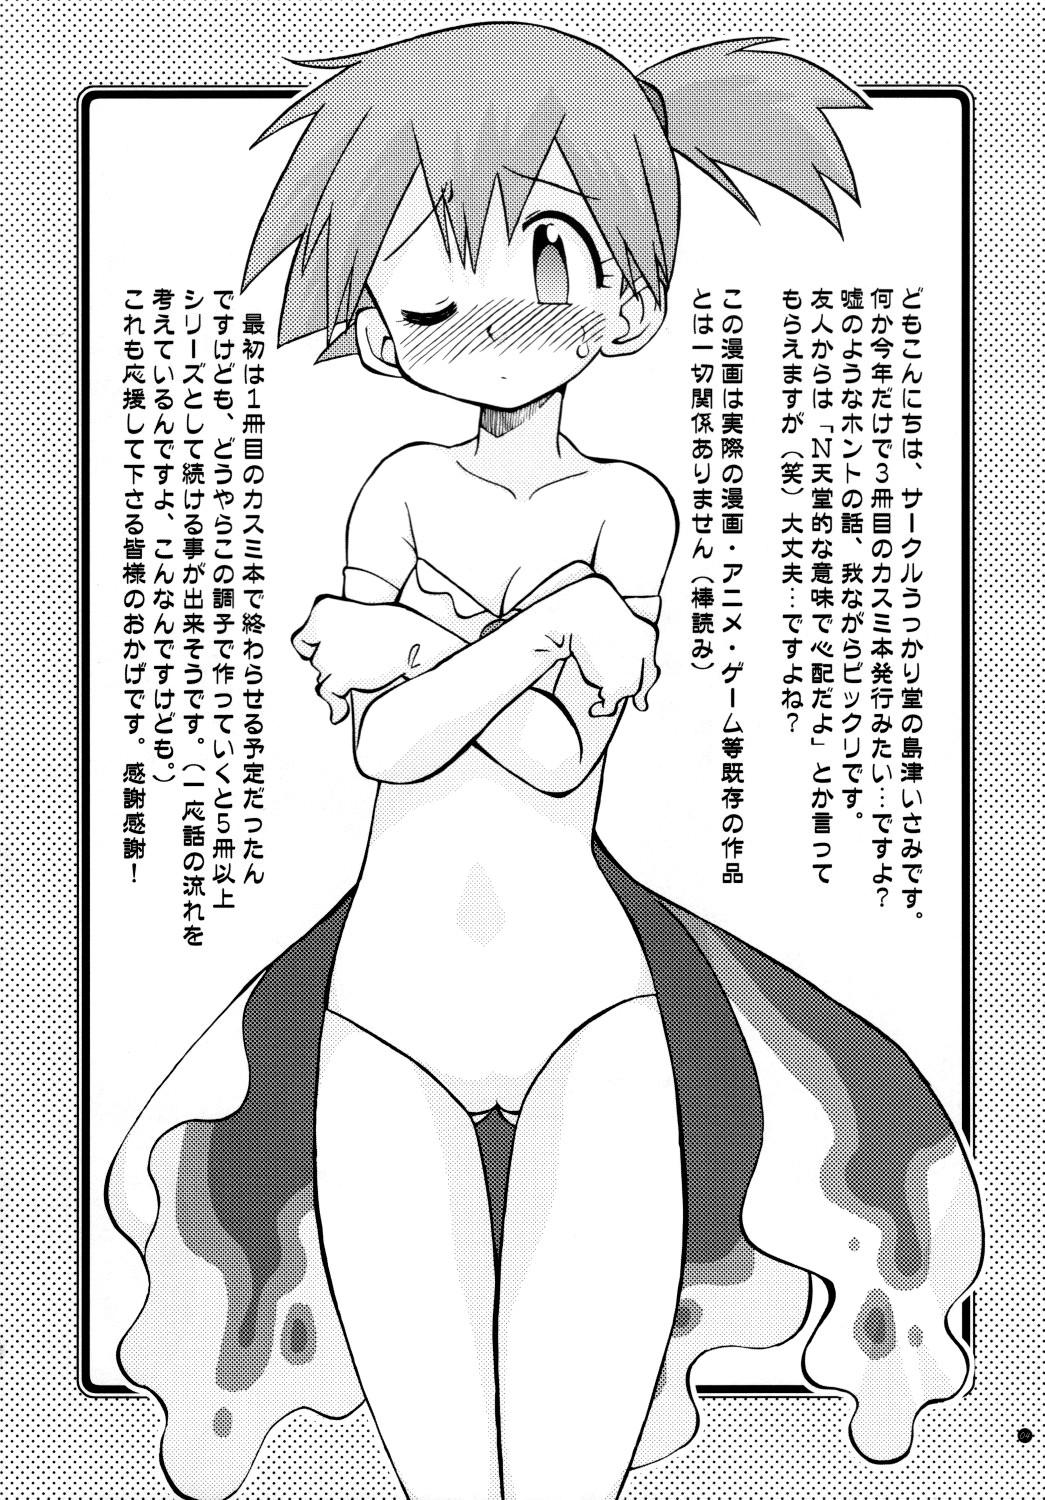 Tesao Mada Mada Dashiranai Koto no Takarabako - Pokemon Women Sucking Dick - Page 4